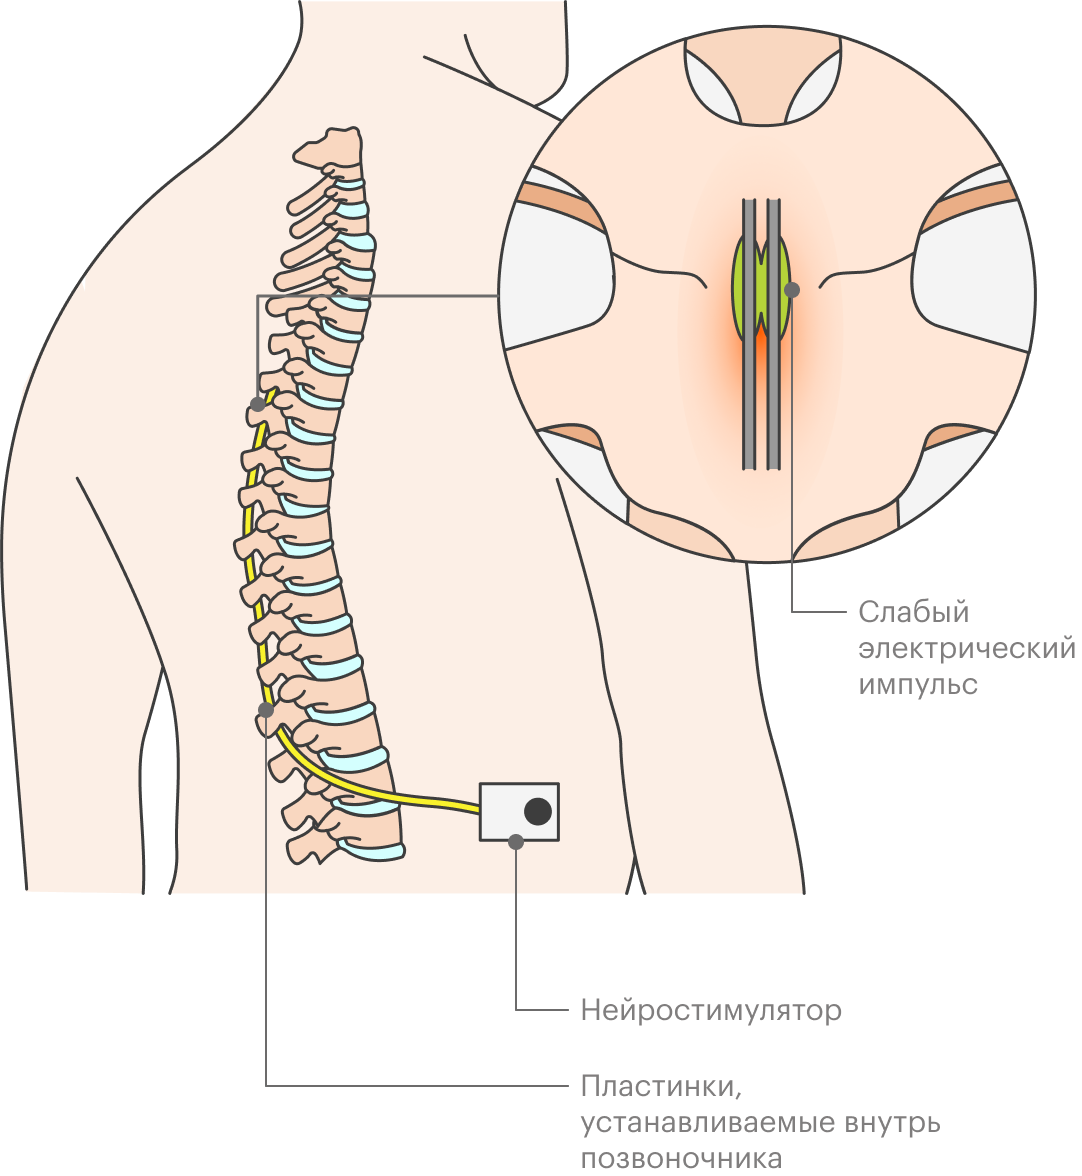 Электростимуляция спинного мозга позволяет лечить хронические болевые синдромы, с которыми не справиться другими способами